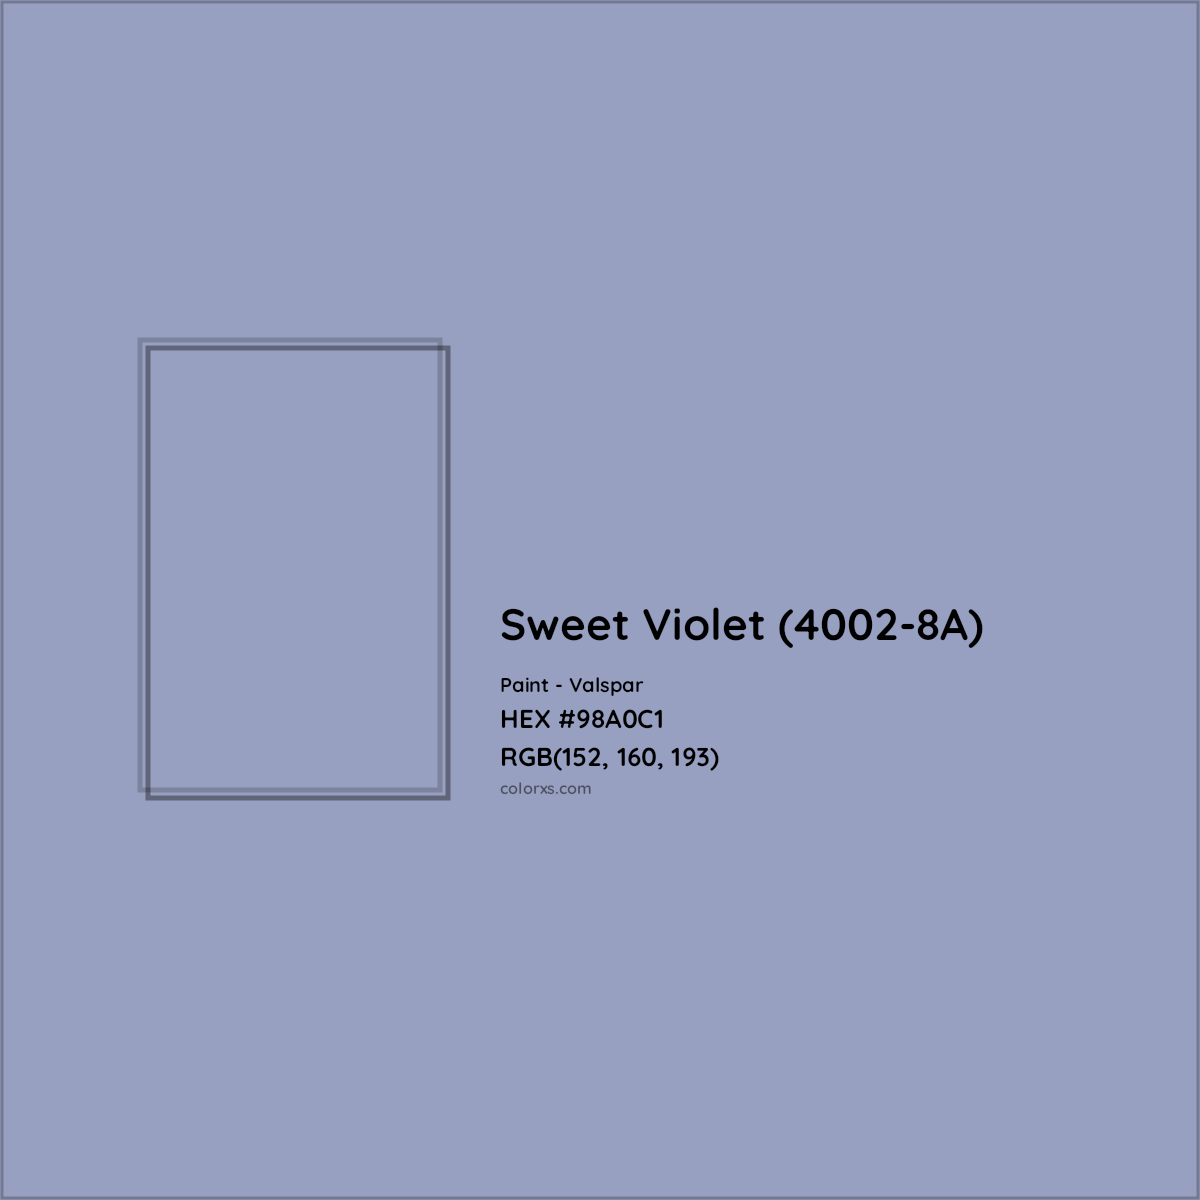 HEX #98A0C1 Sweet Violet (4002-8A) Paint Valspar - Color Code